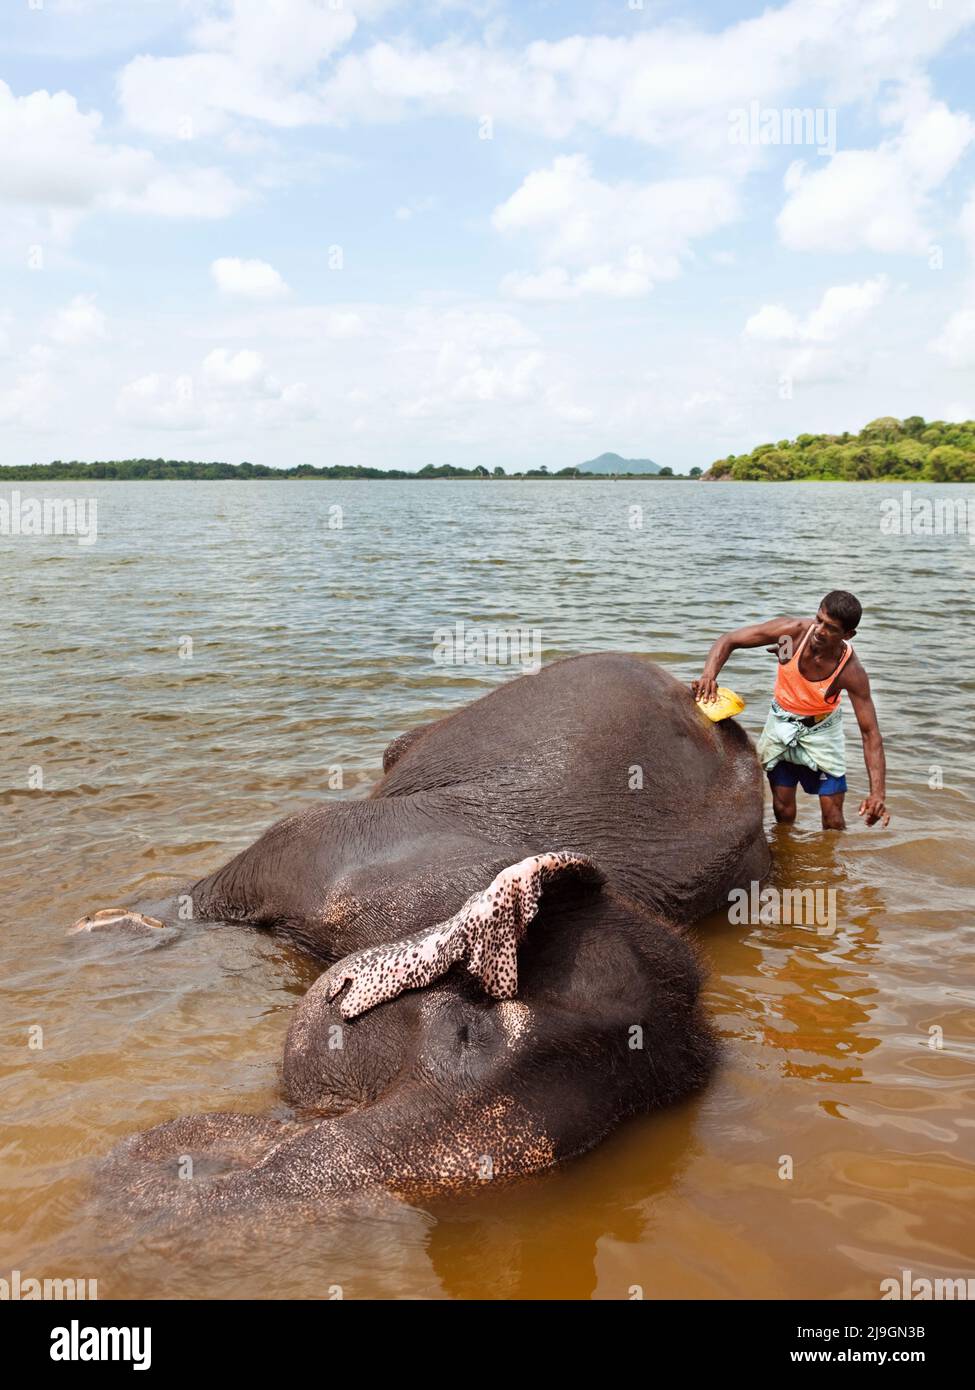 Baño de Elefantes en el Lago Kandalama, Herencia Kandalama, Sri Lanka. Ran Manika, el elefante residente, disfruta de su baño diario con su mahout Kiriban. Foto de stock